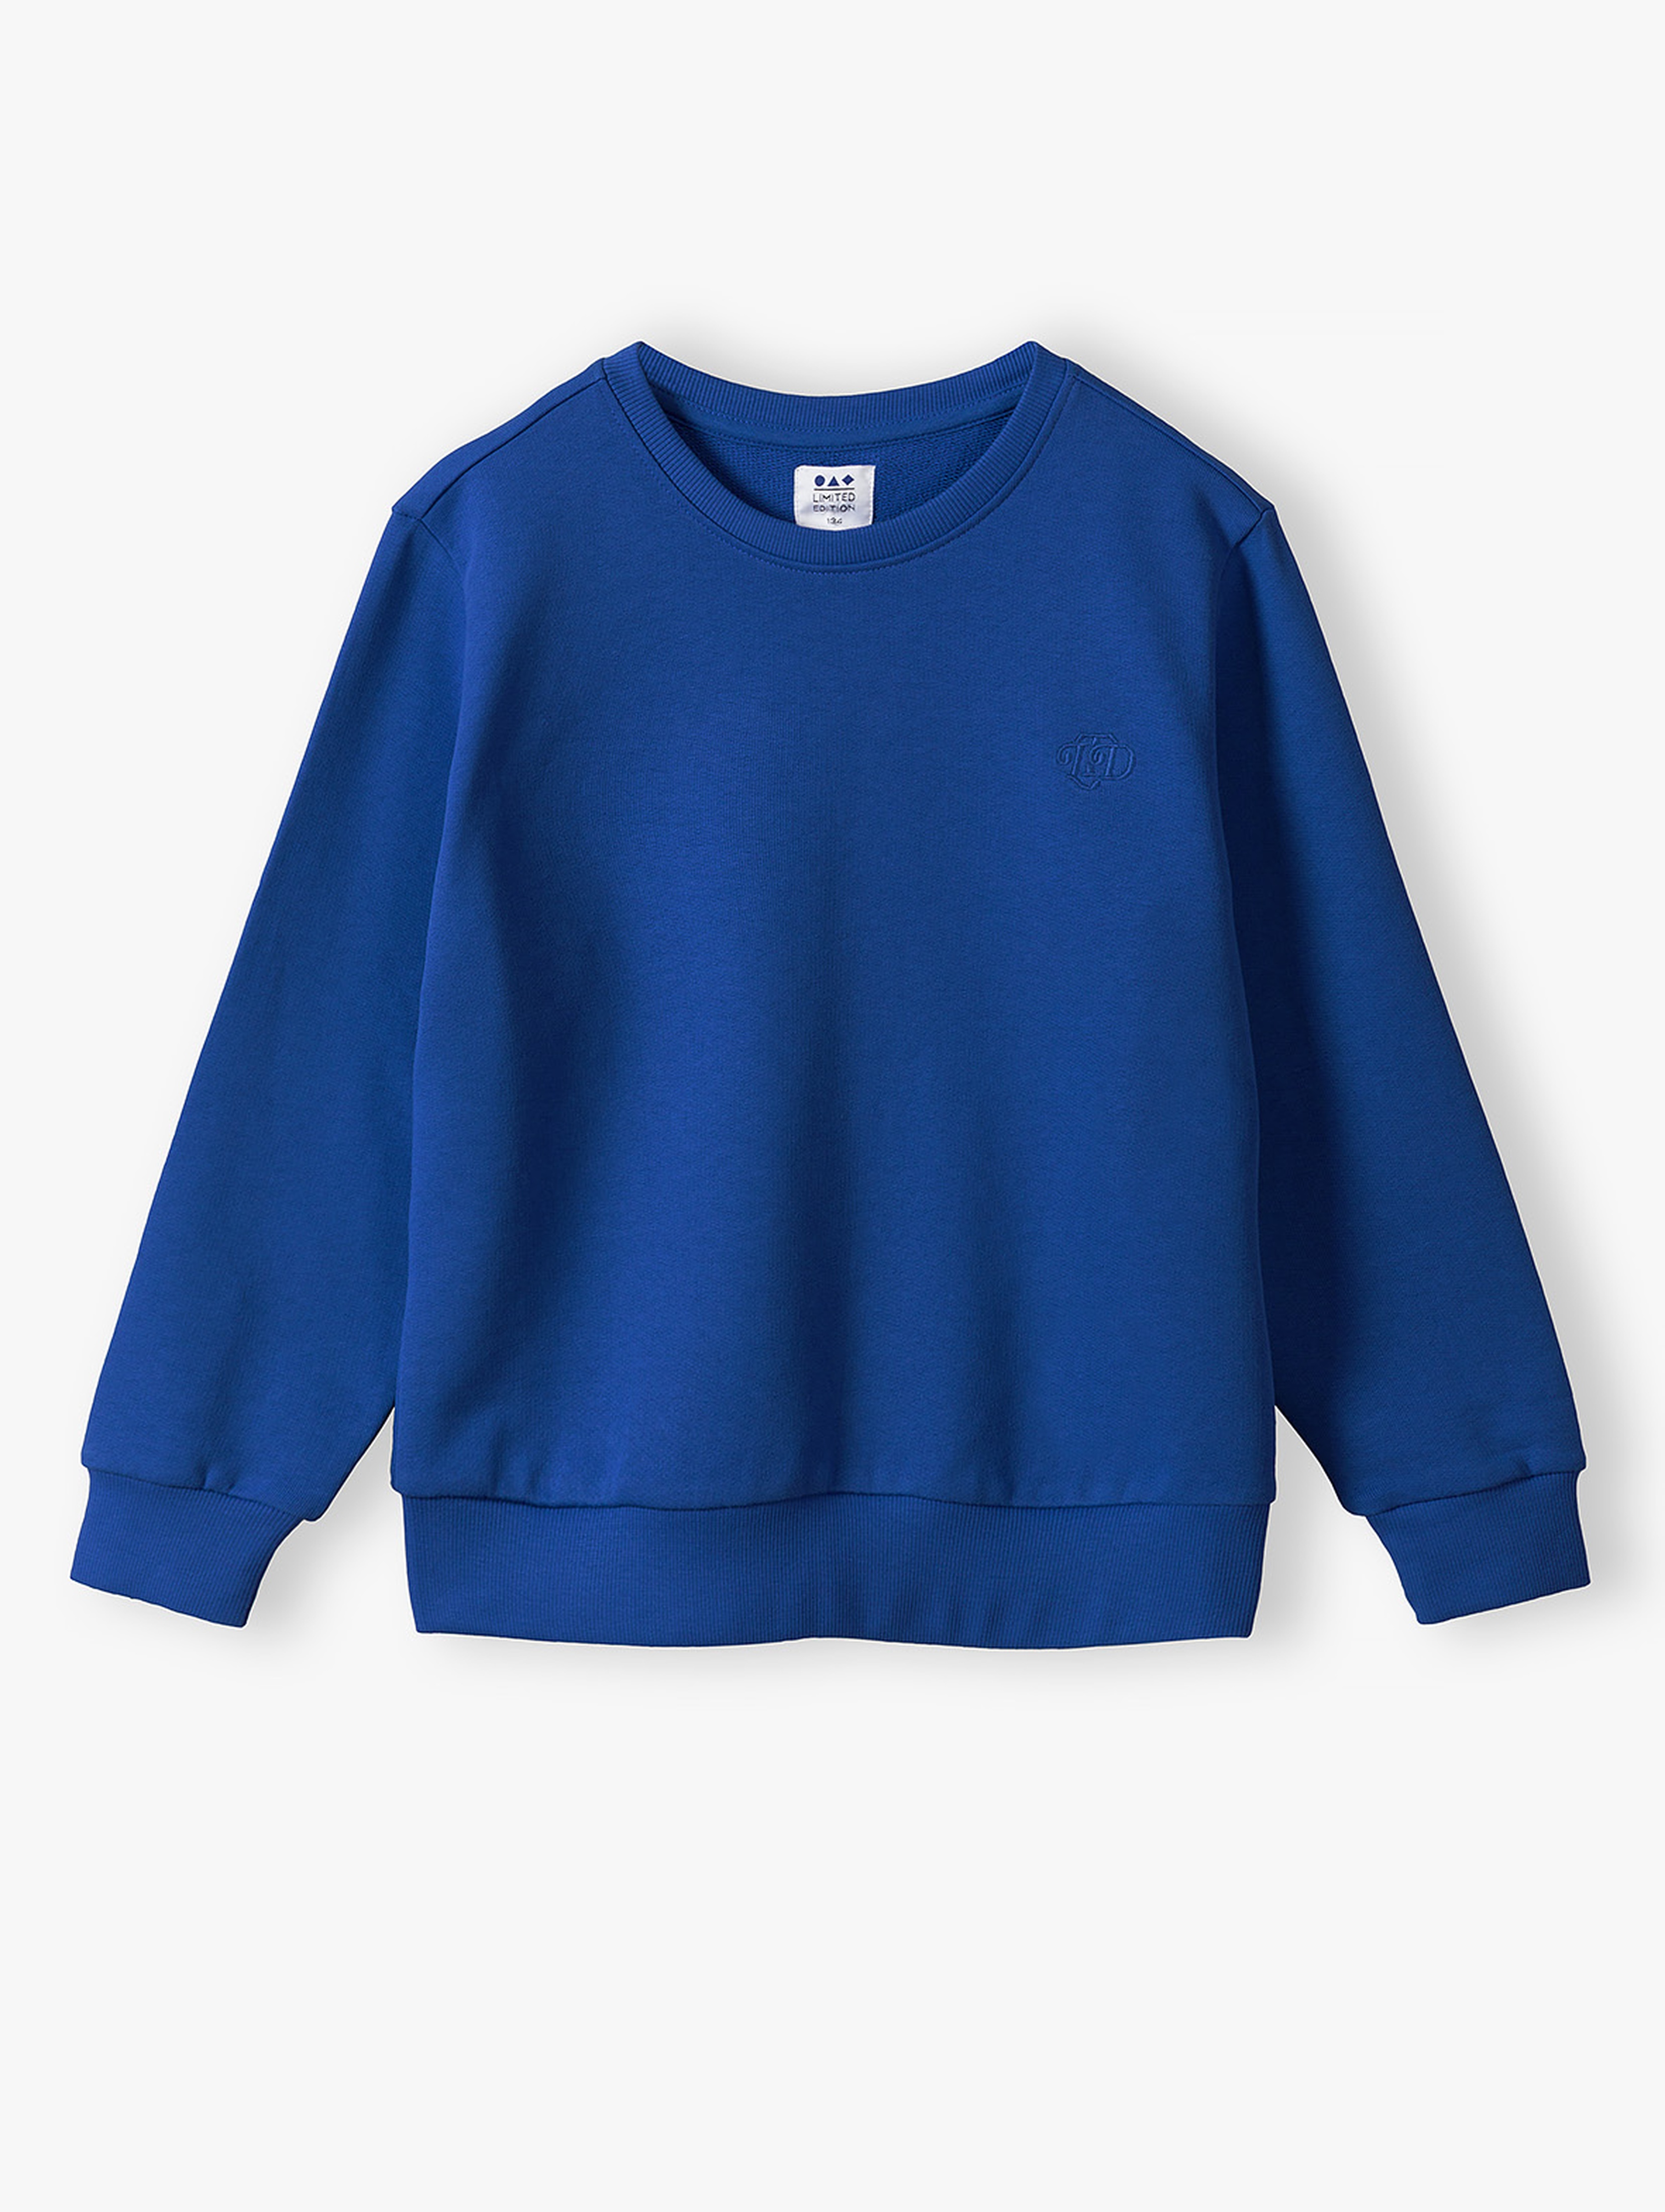 Niebieska bluza dresowa dla dziecka - unisex - Limited Edition